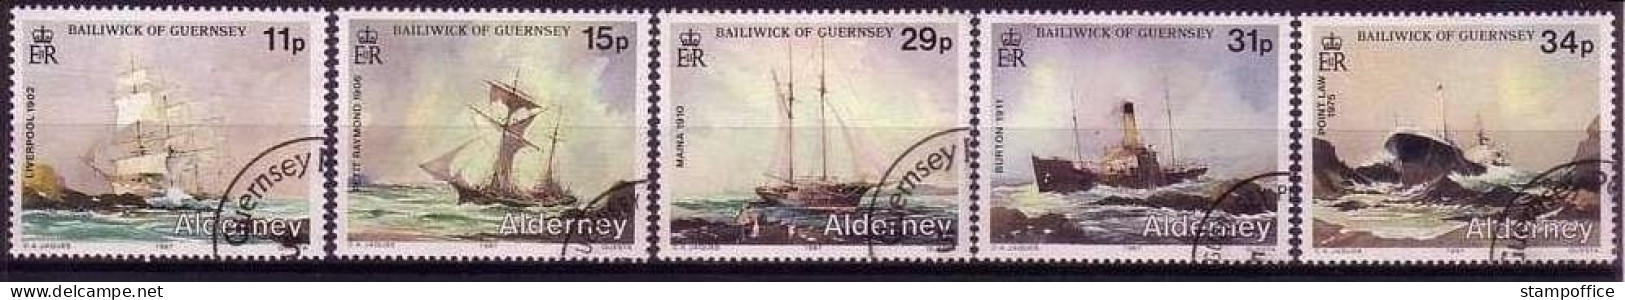 ALDERNEY MI-NR. 32-36 O SCHIFFE - SCHIFFWRACKS 1987 - Alderney